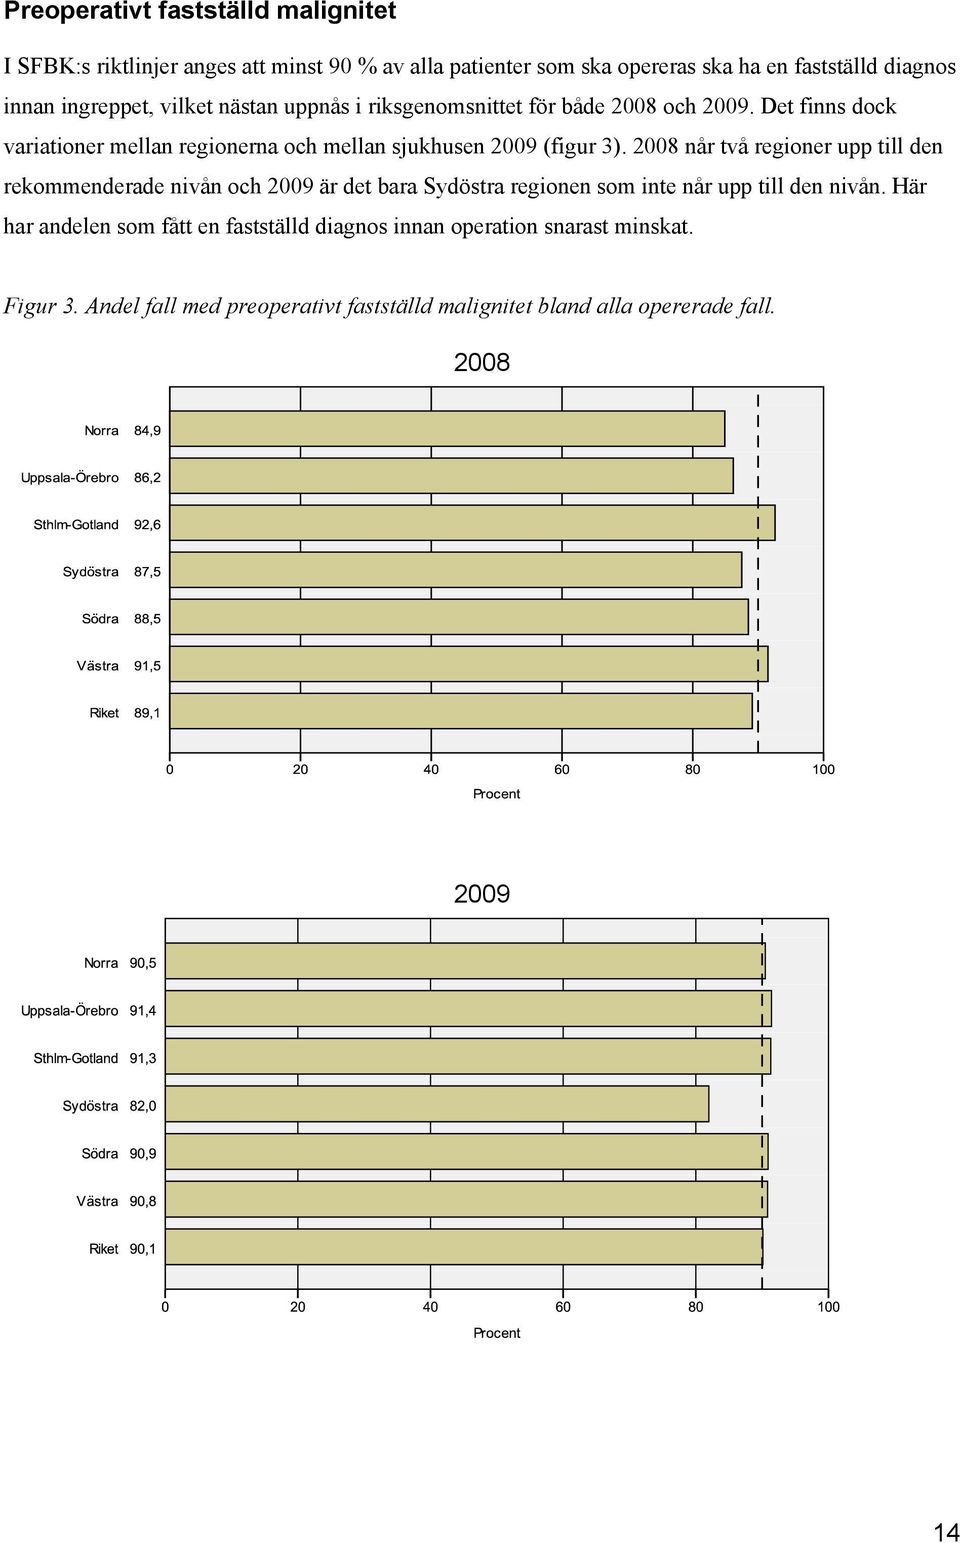 Det finns dock variationer mellan regionerna och mellan sjukhusen 2009 (figur 3).